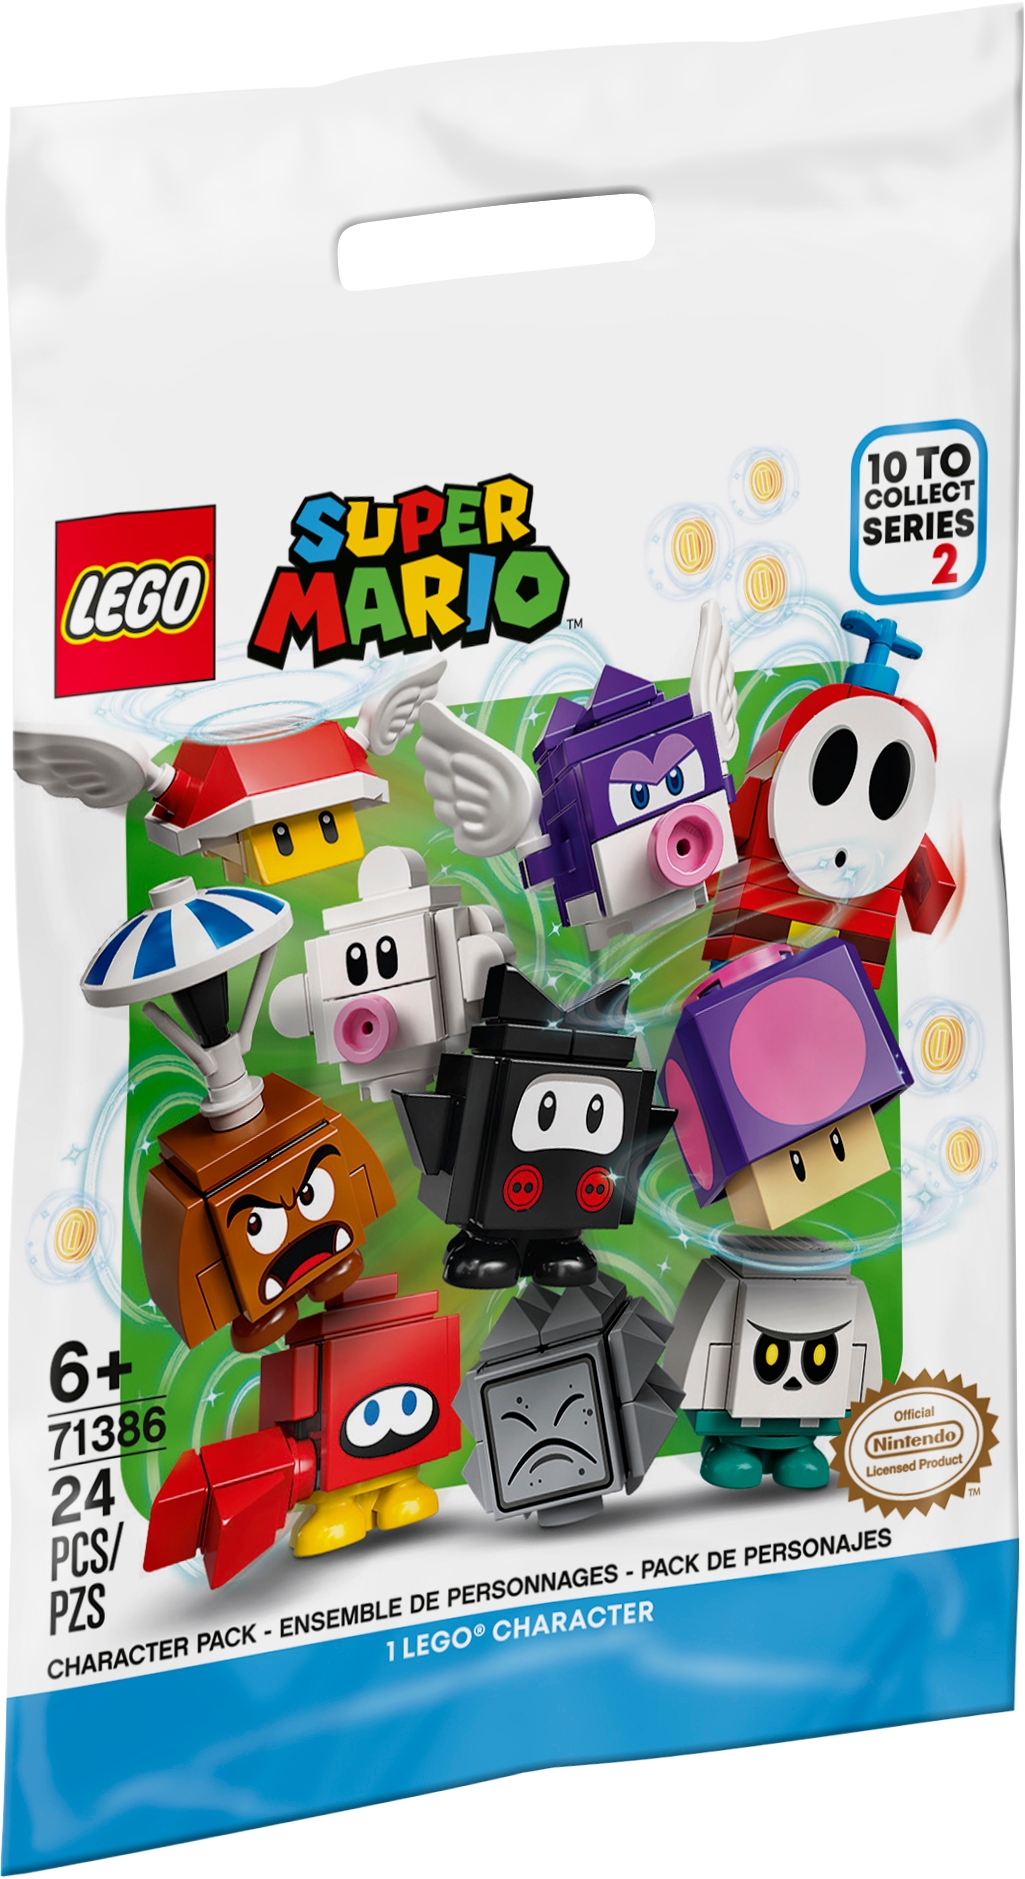 Packs de Personajes: Edición 2 71386 | LEGO® Super Mario™ | Oficial Shop ES